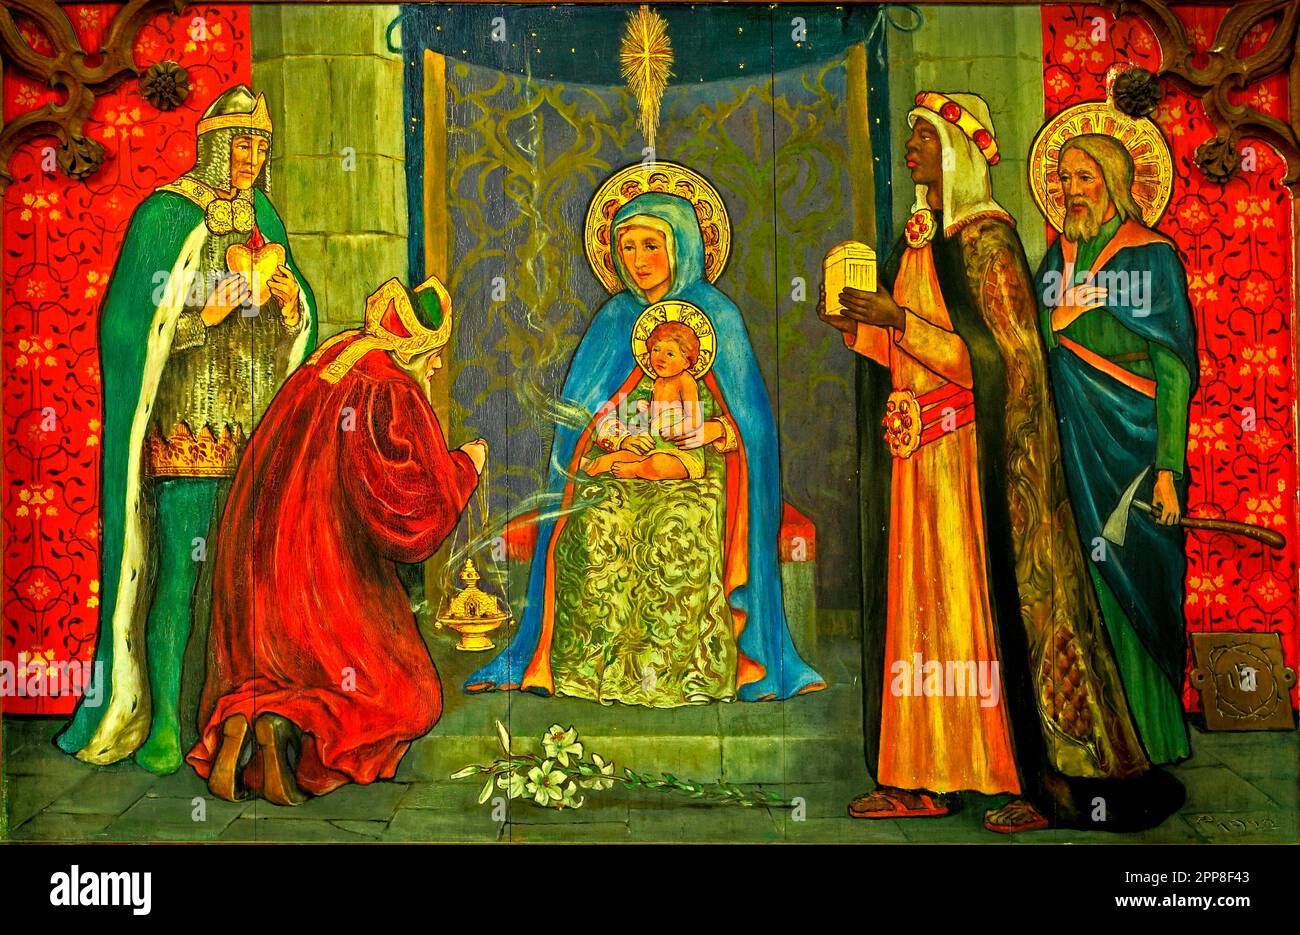 The Magi, Noël, cadeaux à Jésus, peinture sur bois, Langham, Norfolk, Angleterre, ROYAUME-UNI Banque D'Images